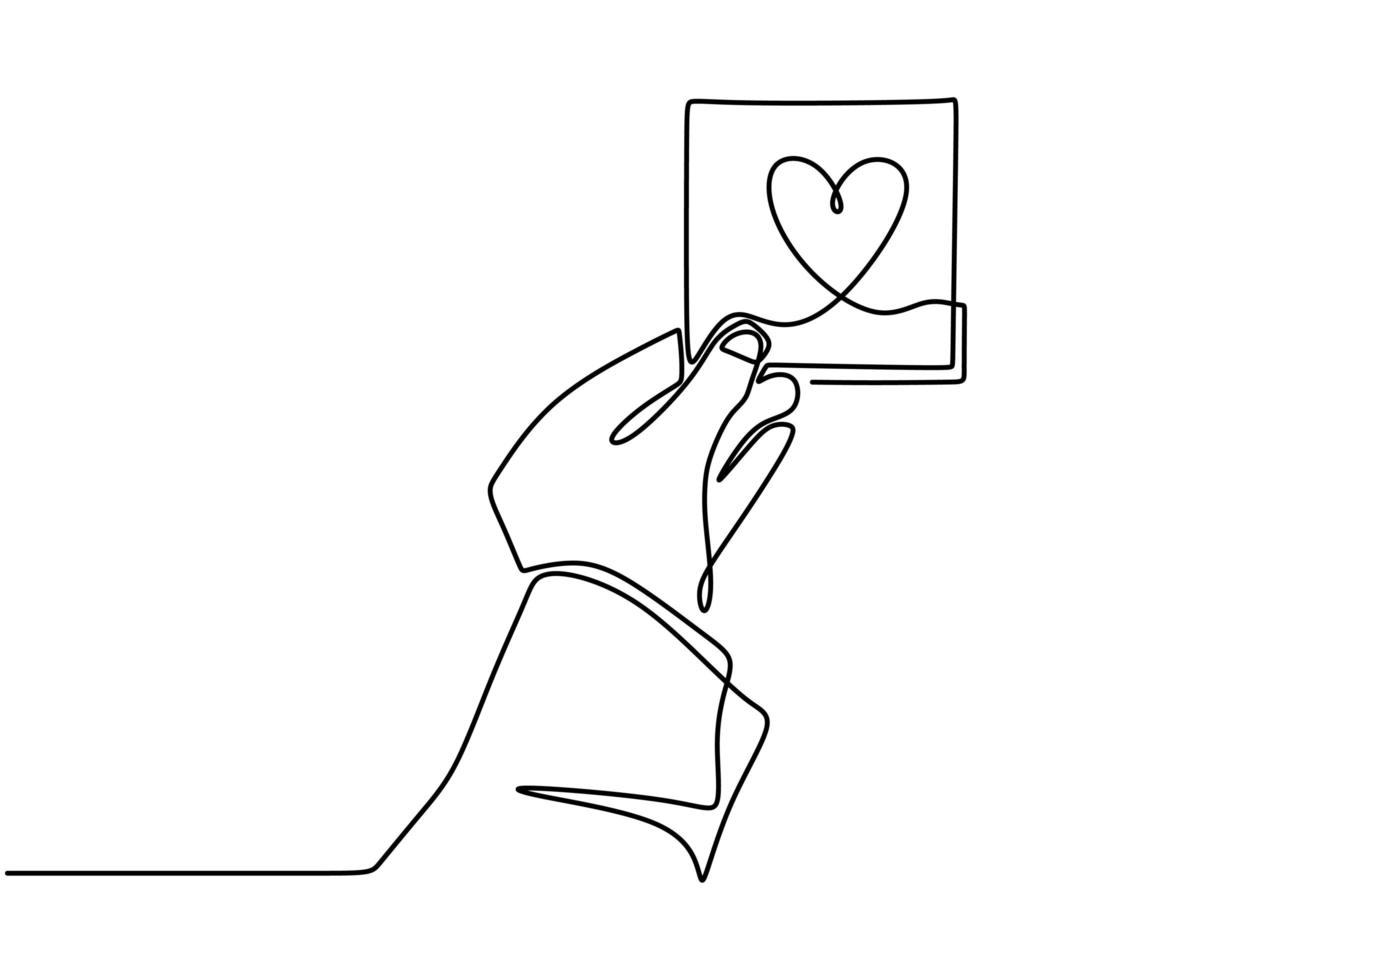 desenho de linha contínua mão segurando a placa do coração do amor, ilustração em vetor esboço desenhado de uma mão.